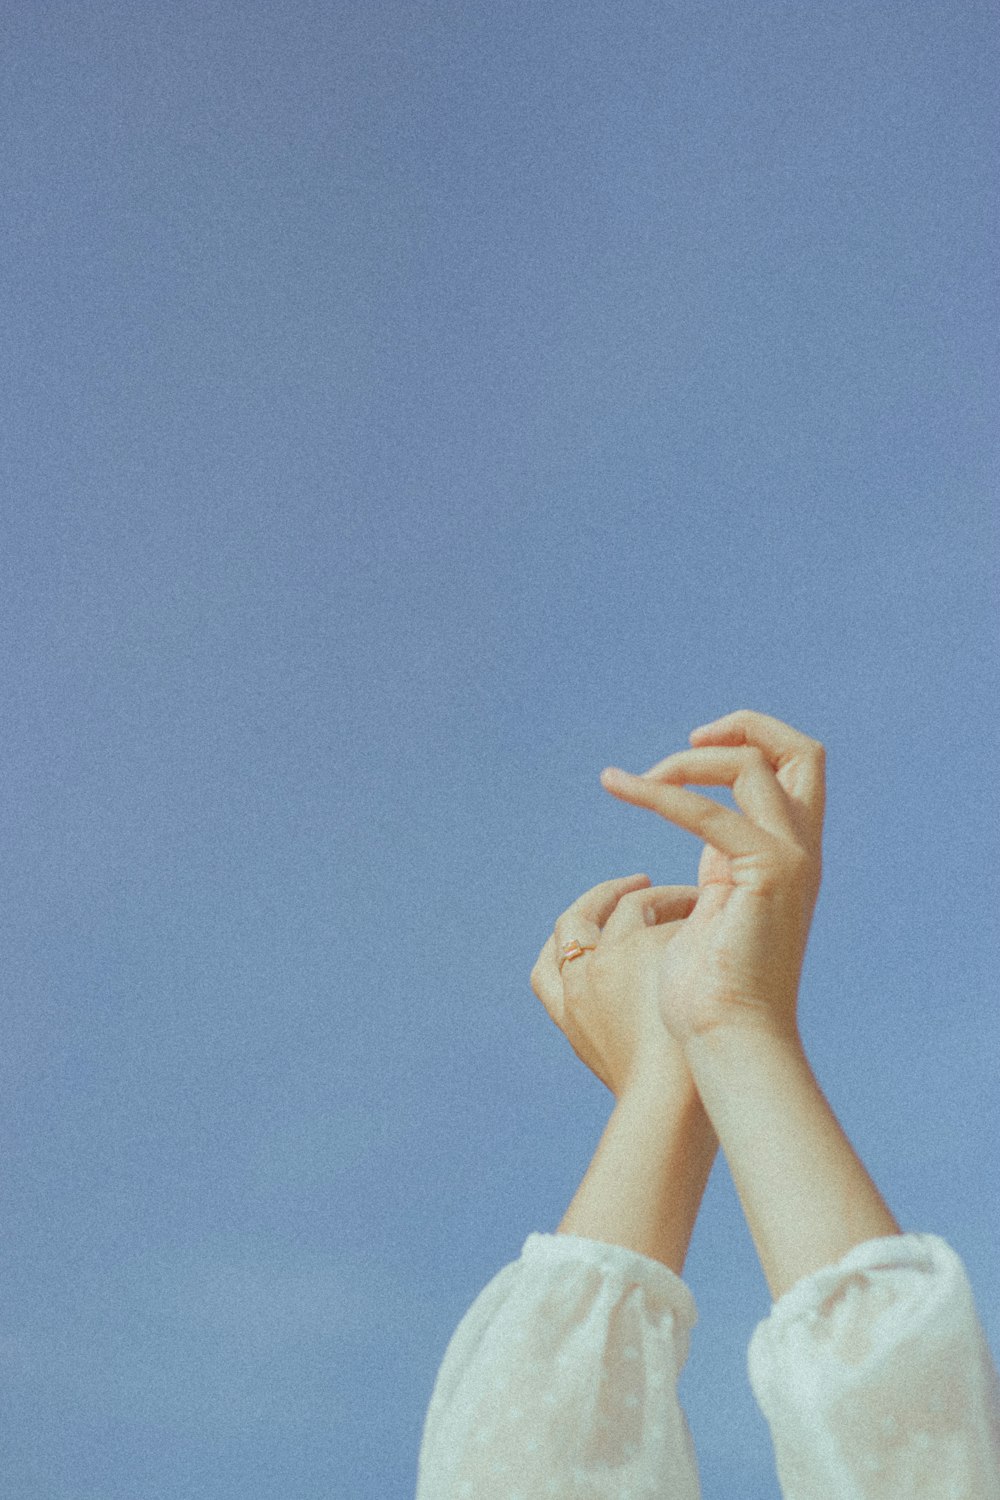 La mano de las personas en el cielo azul